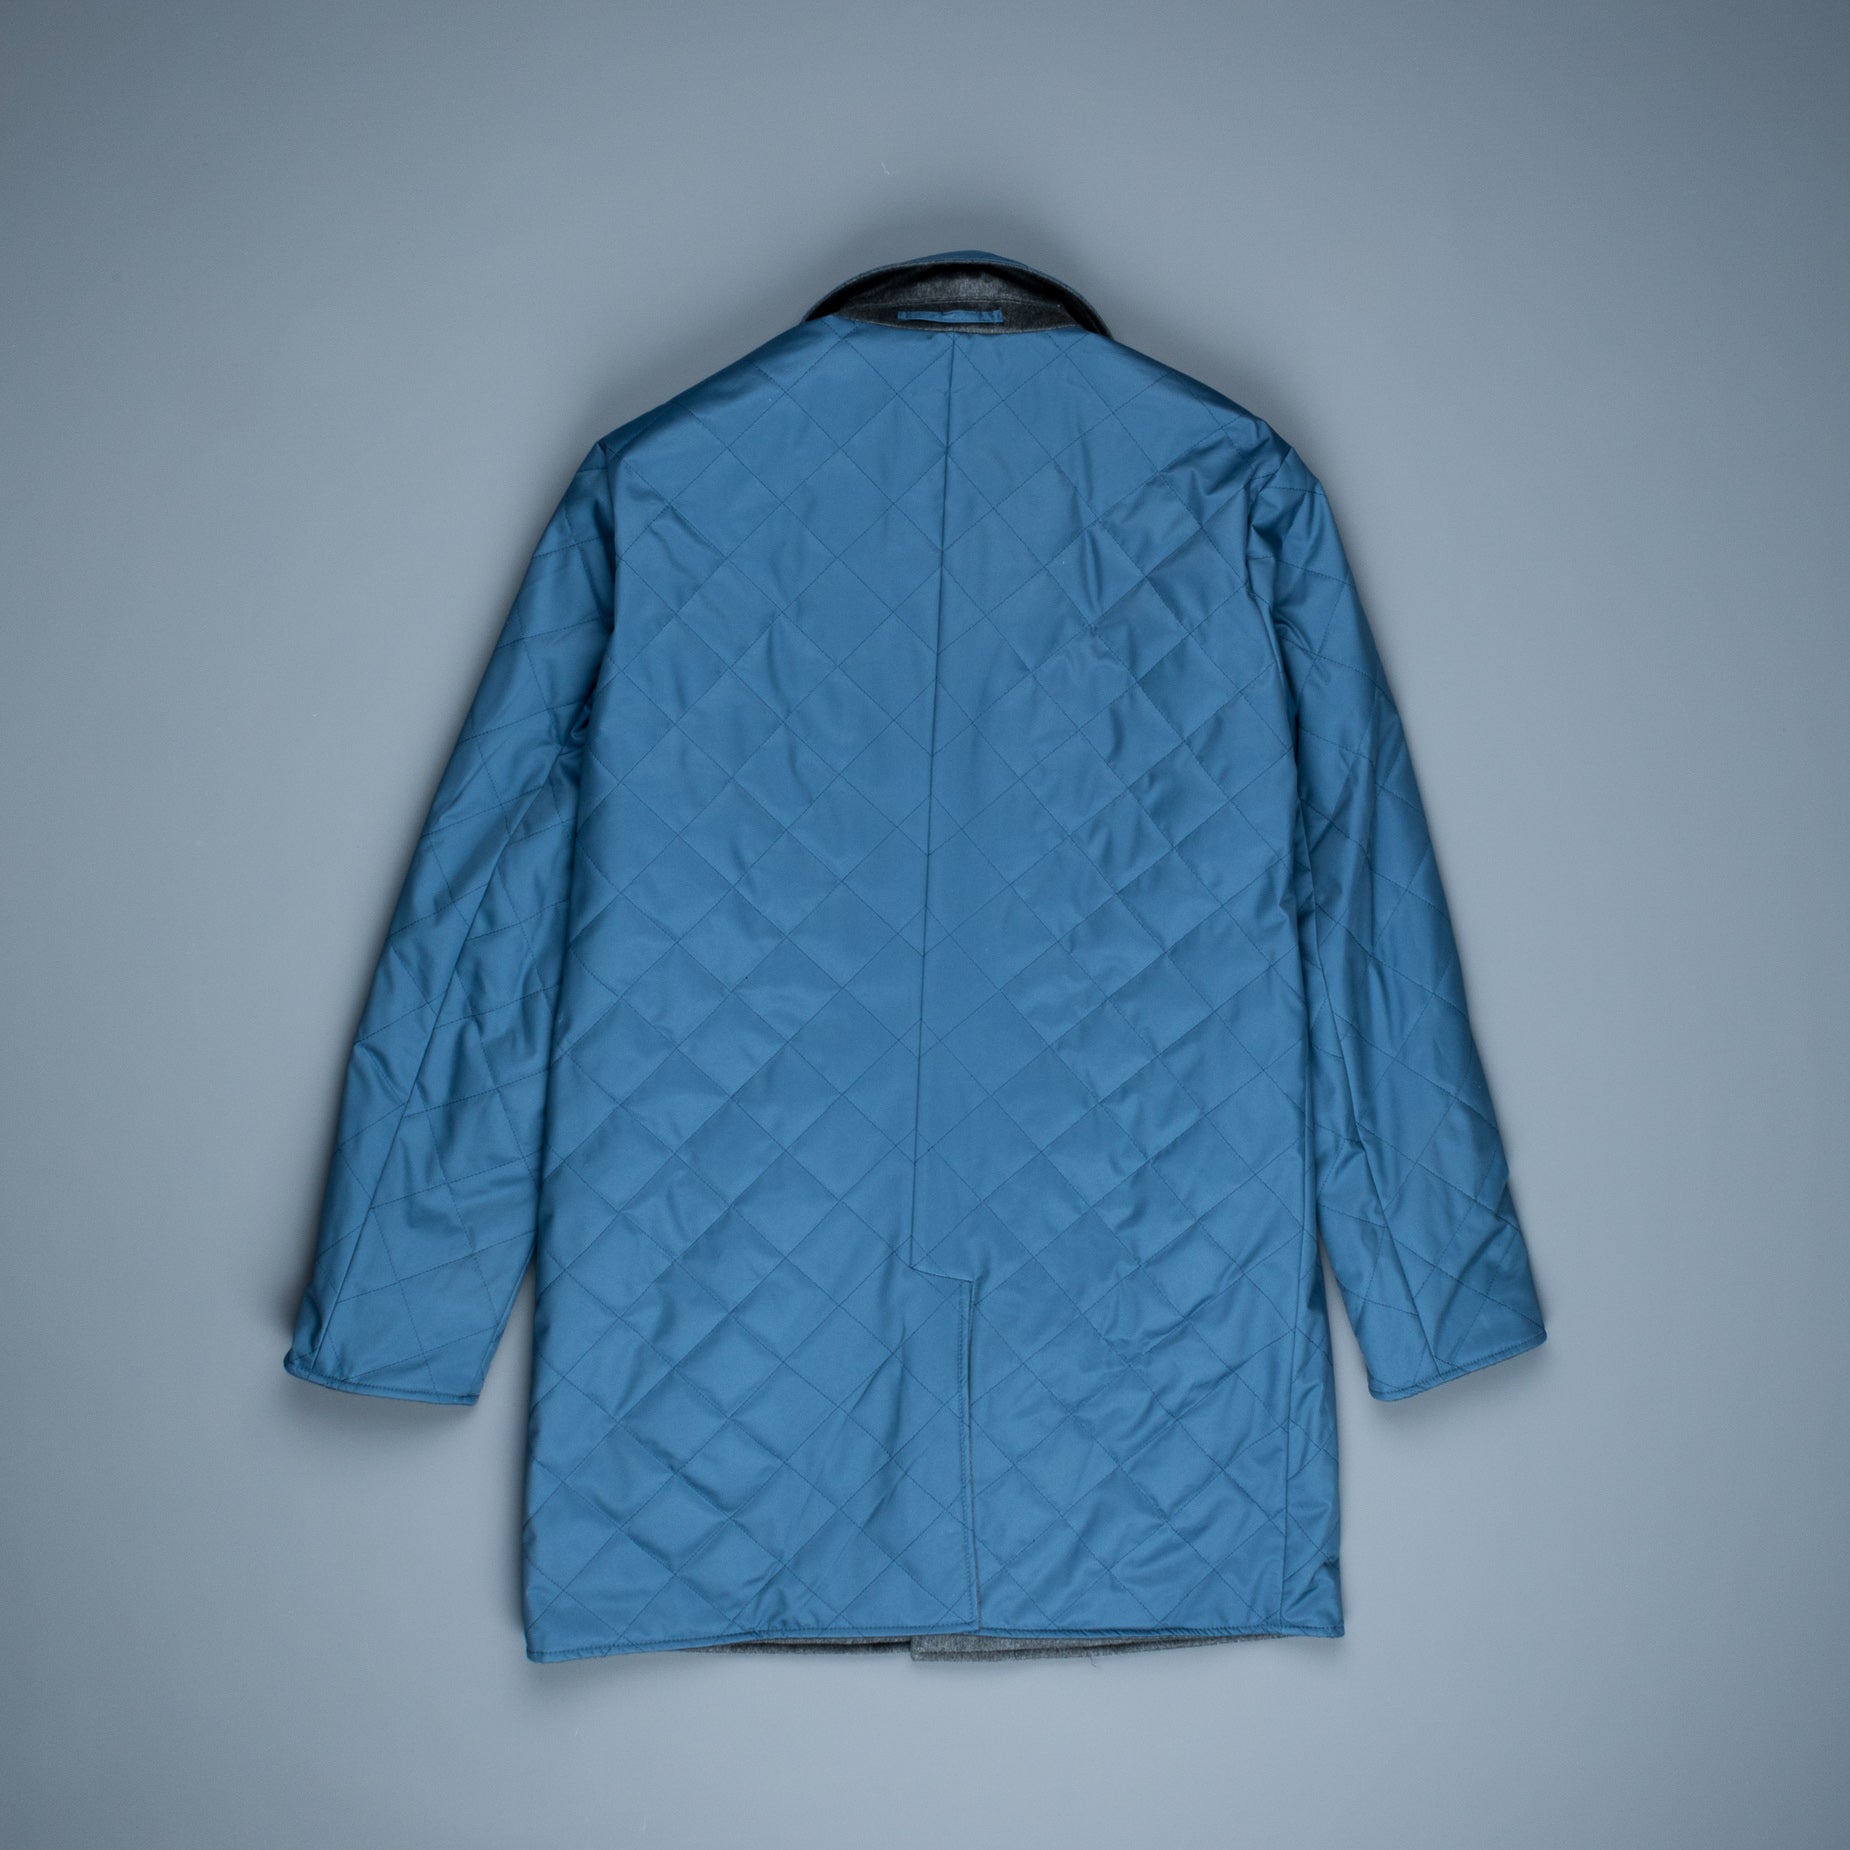 Kired Rigi Reversible Coat Grigio - Blu